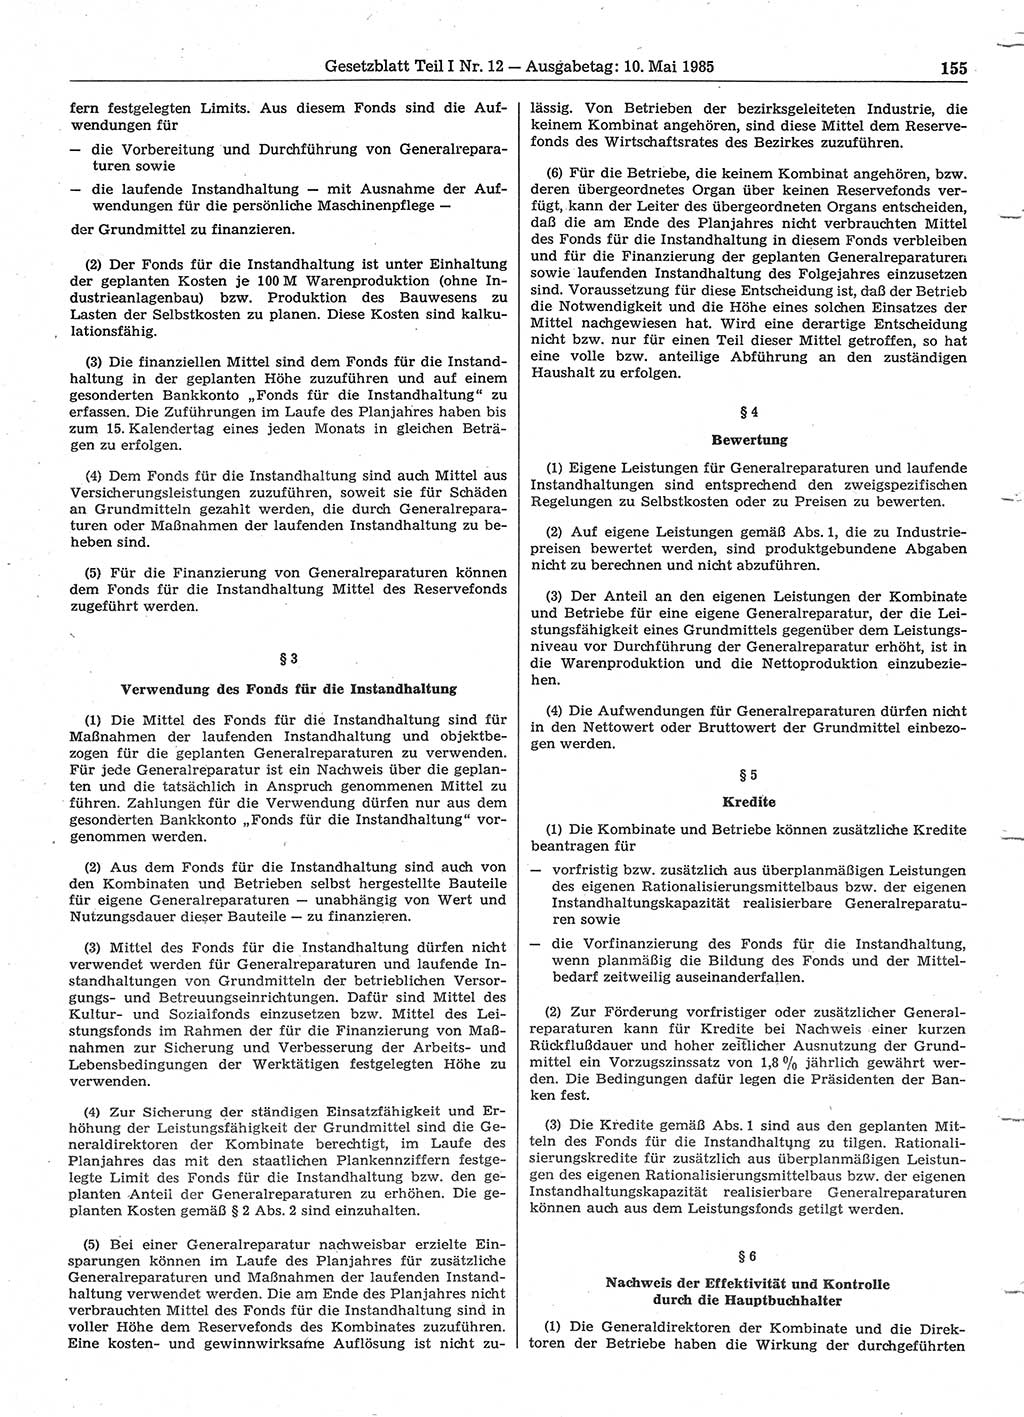 Gesetzblatt (GBl.) der Deutschen Demokratischen Republik (DDR) Teil Ⅰ 1985, Seite 155 (GBl. DDR Ⅰ 1985, S. 155)